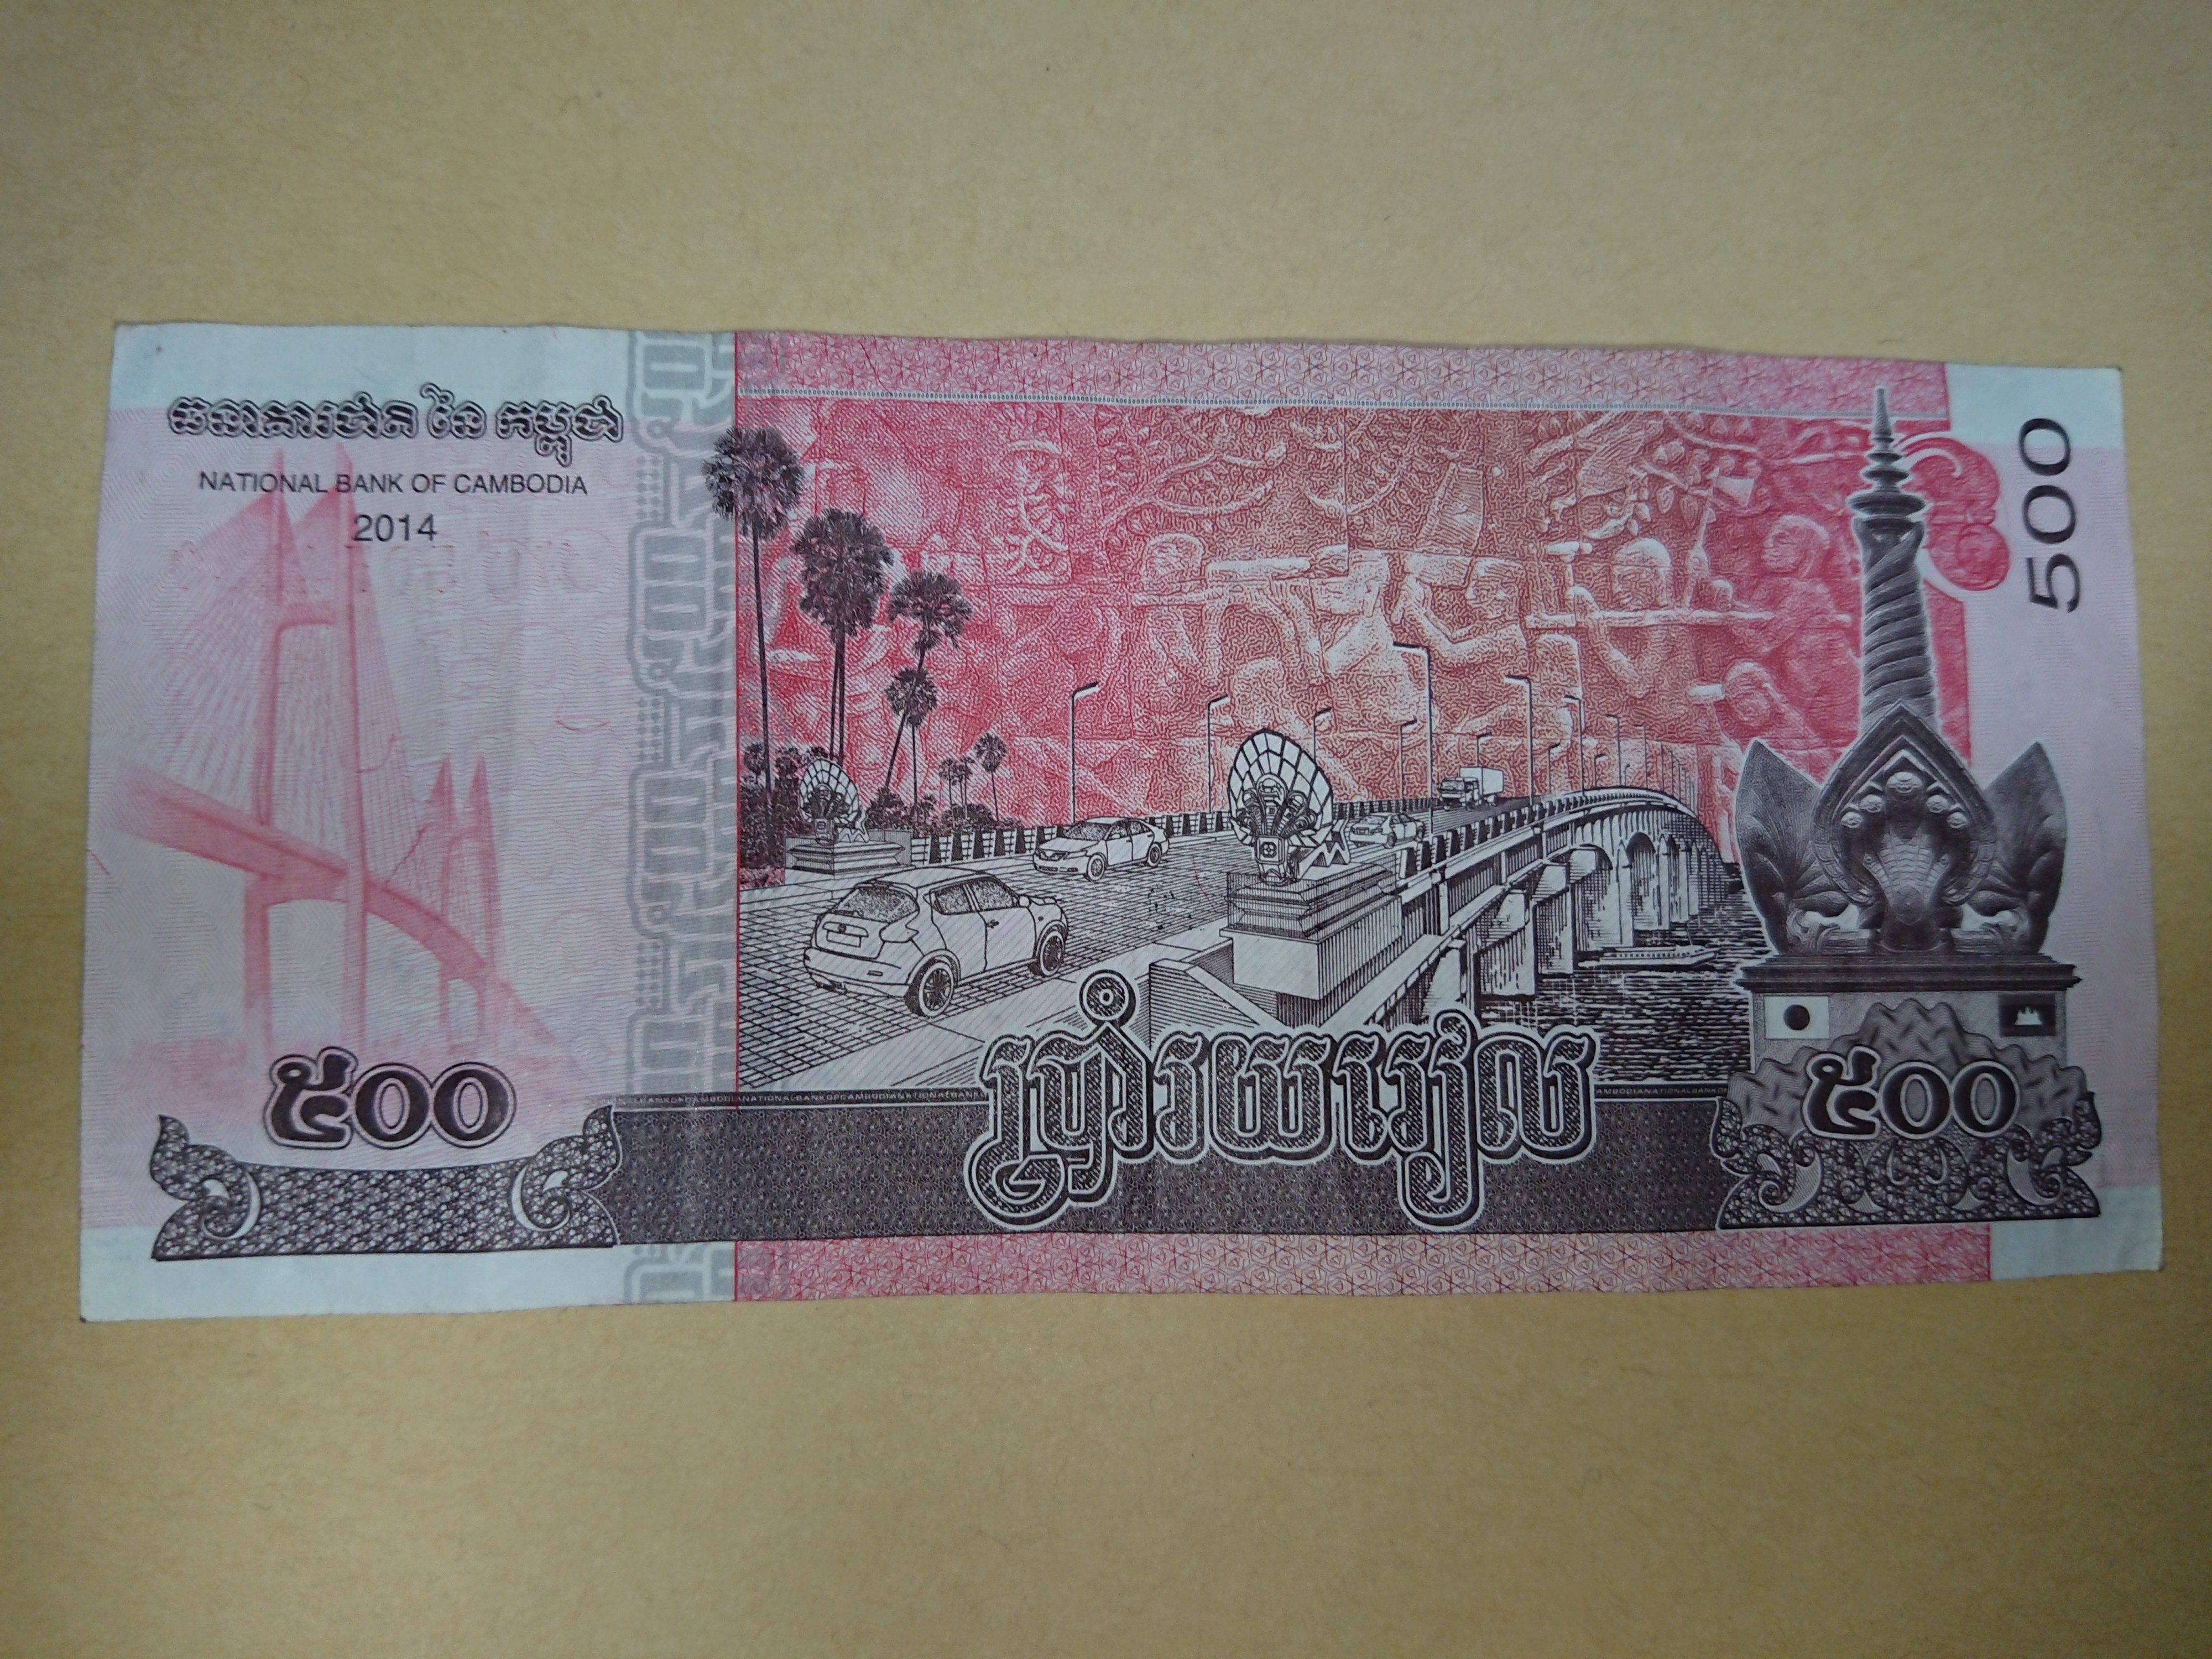 カンボジア経済事情 なぜ現地ではリエルより米ドルが主流なの ニゲドク